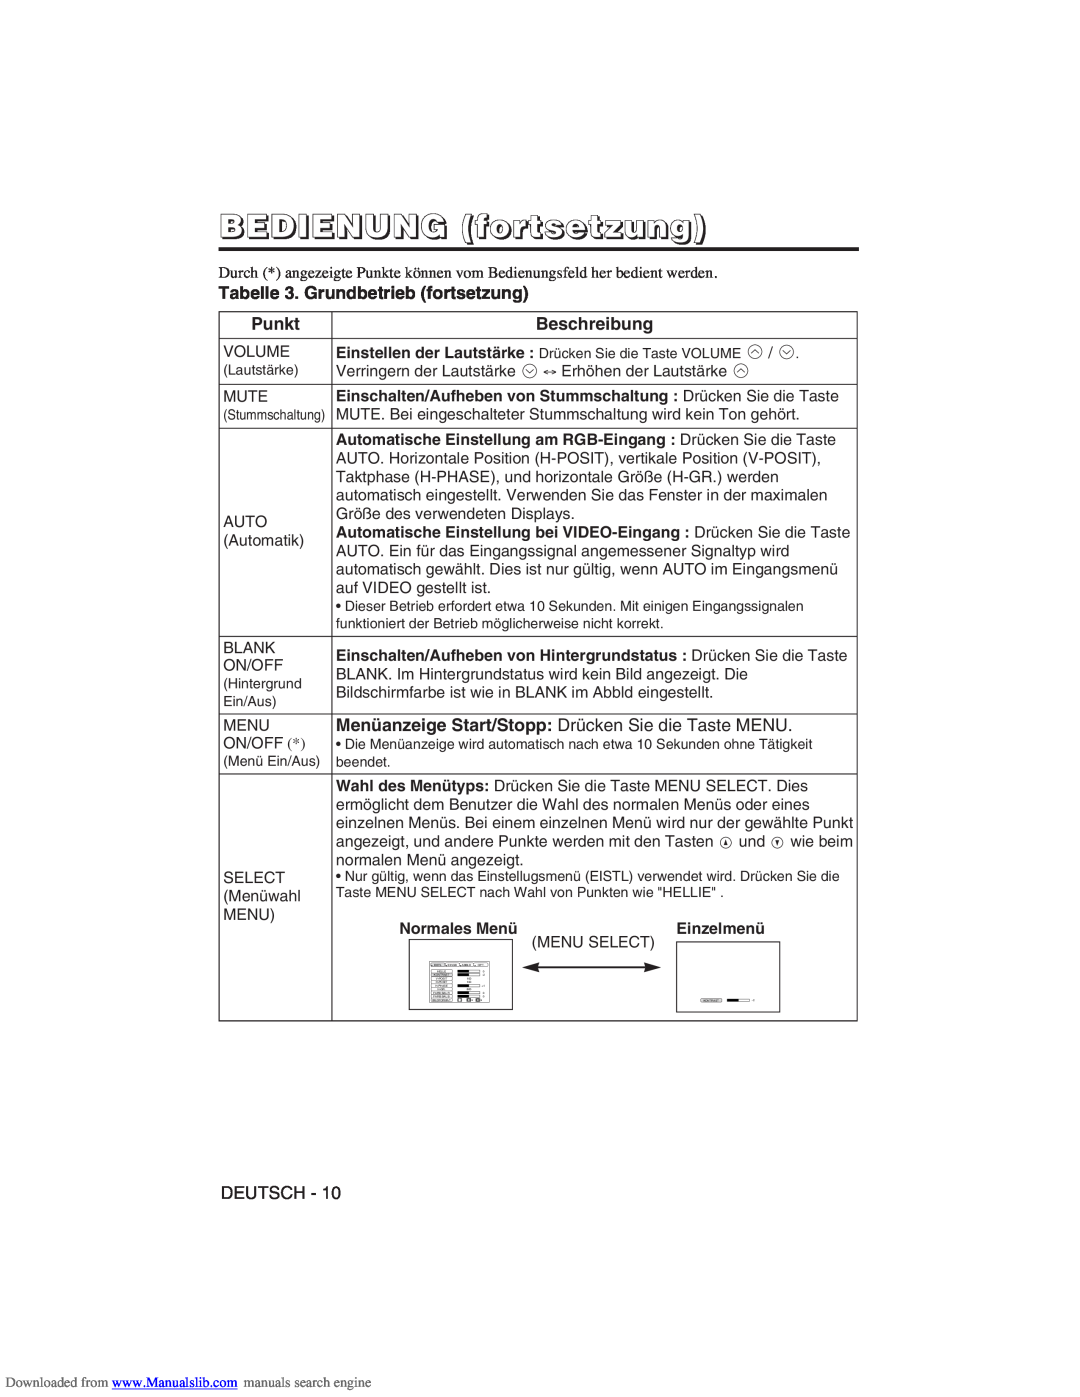 Hitachi CP-X275W user manual Tabelle 3. Grundbetrieb fortsetzung, BEDIENUNG fortsetzung, Punkt, Beschreibung, Deutsch 